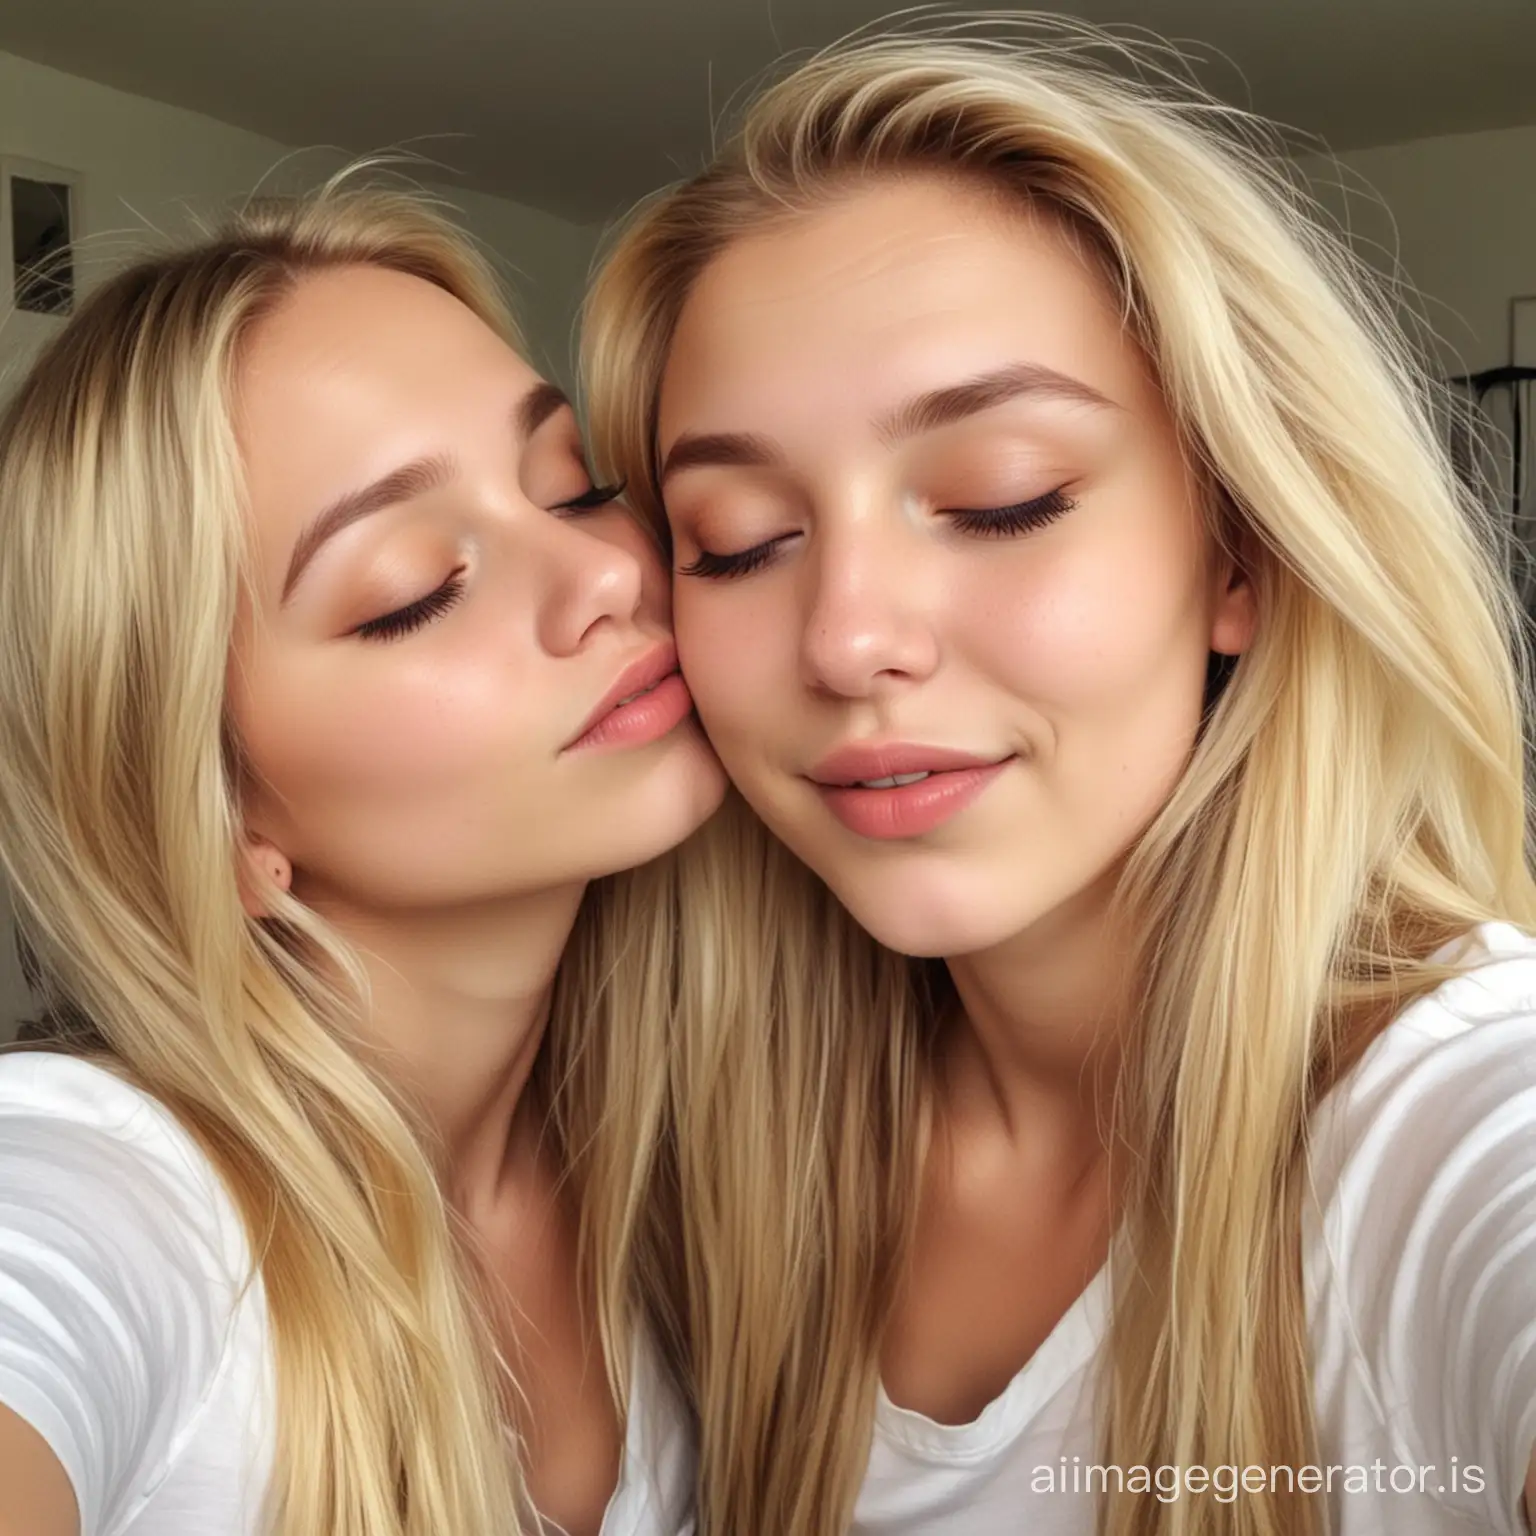 Teenage-Girls-Selfie-FullLength-Blonde-Hair-Closed-Eyes-Mutual-Kiss